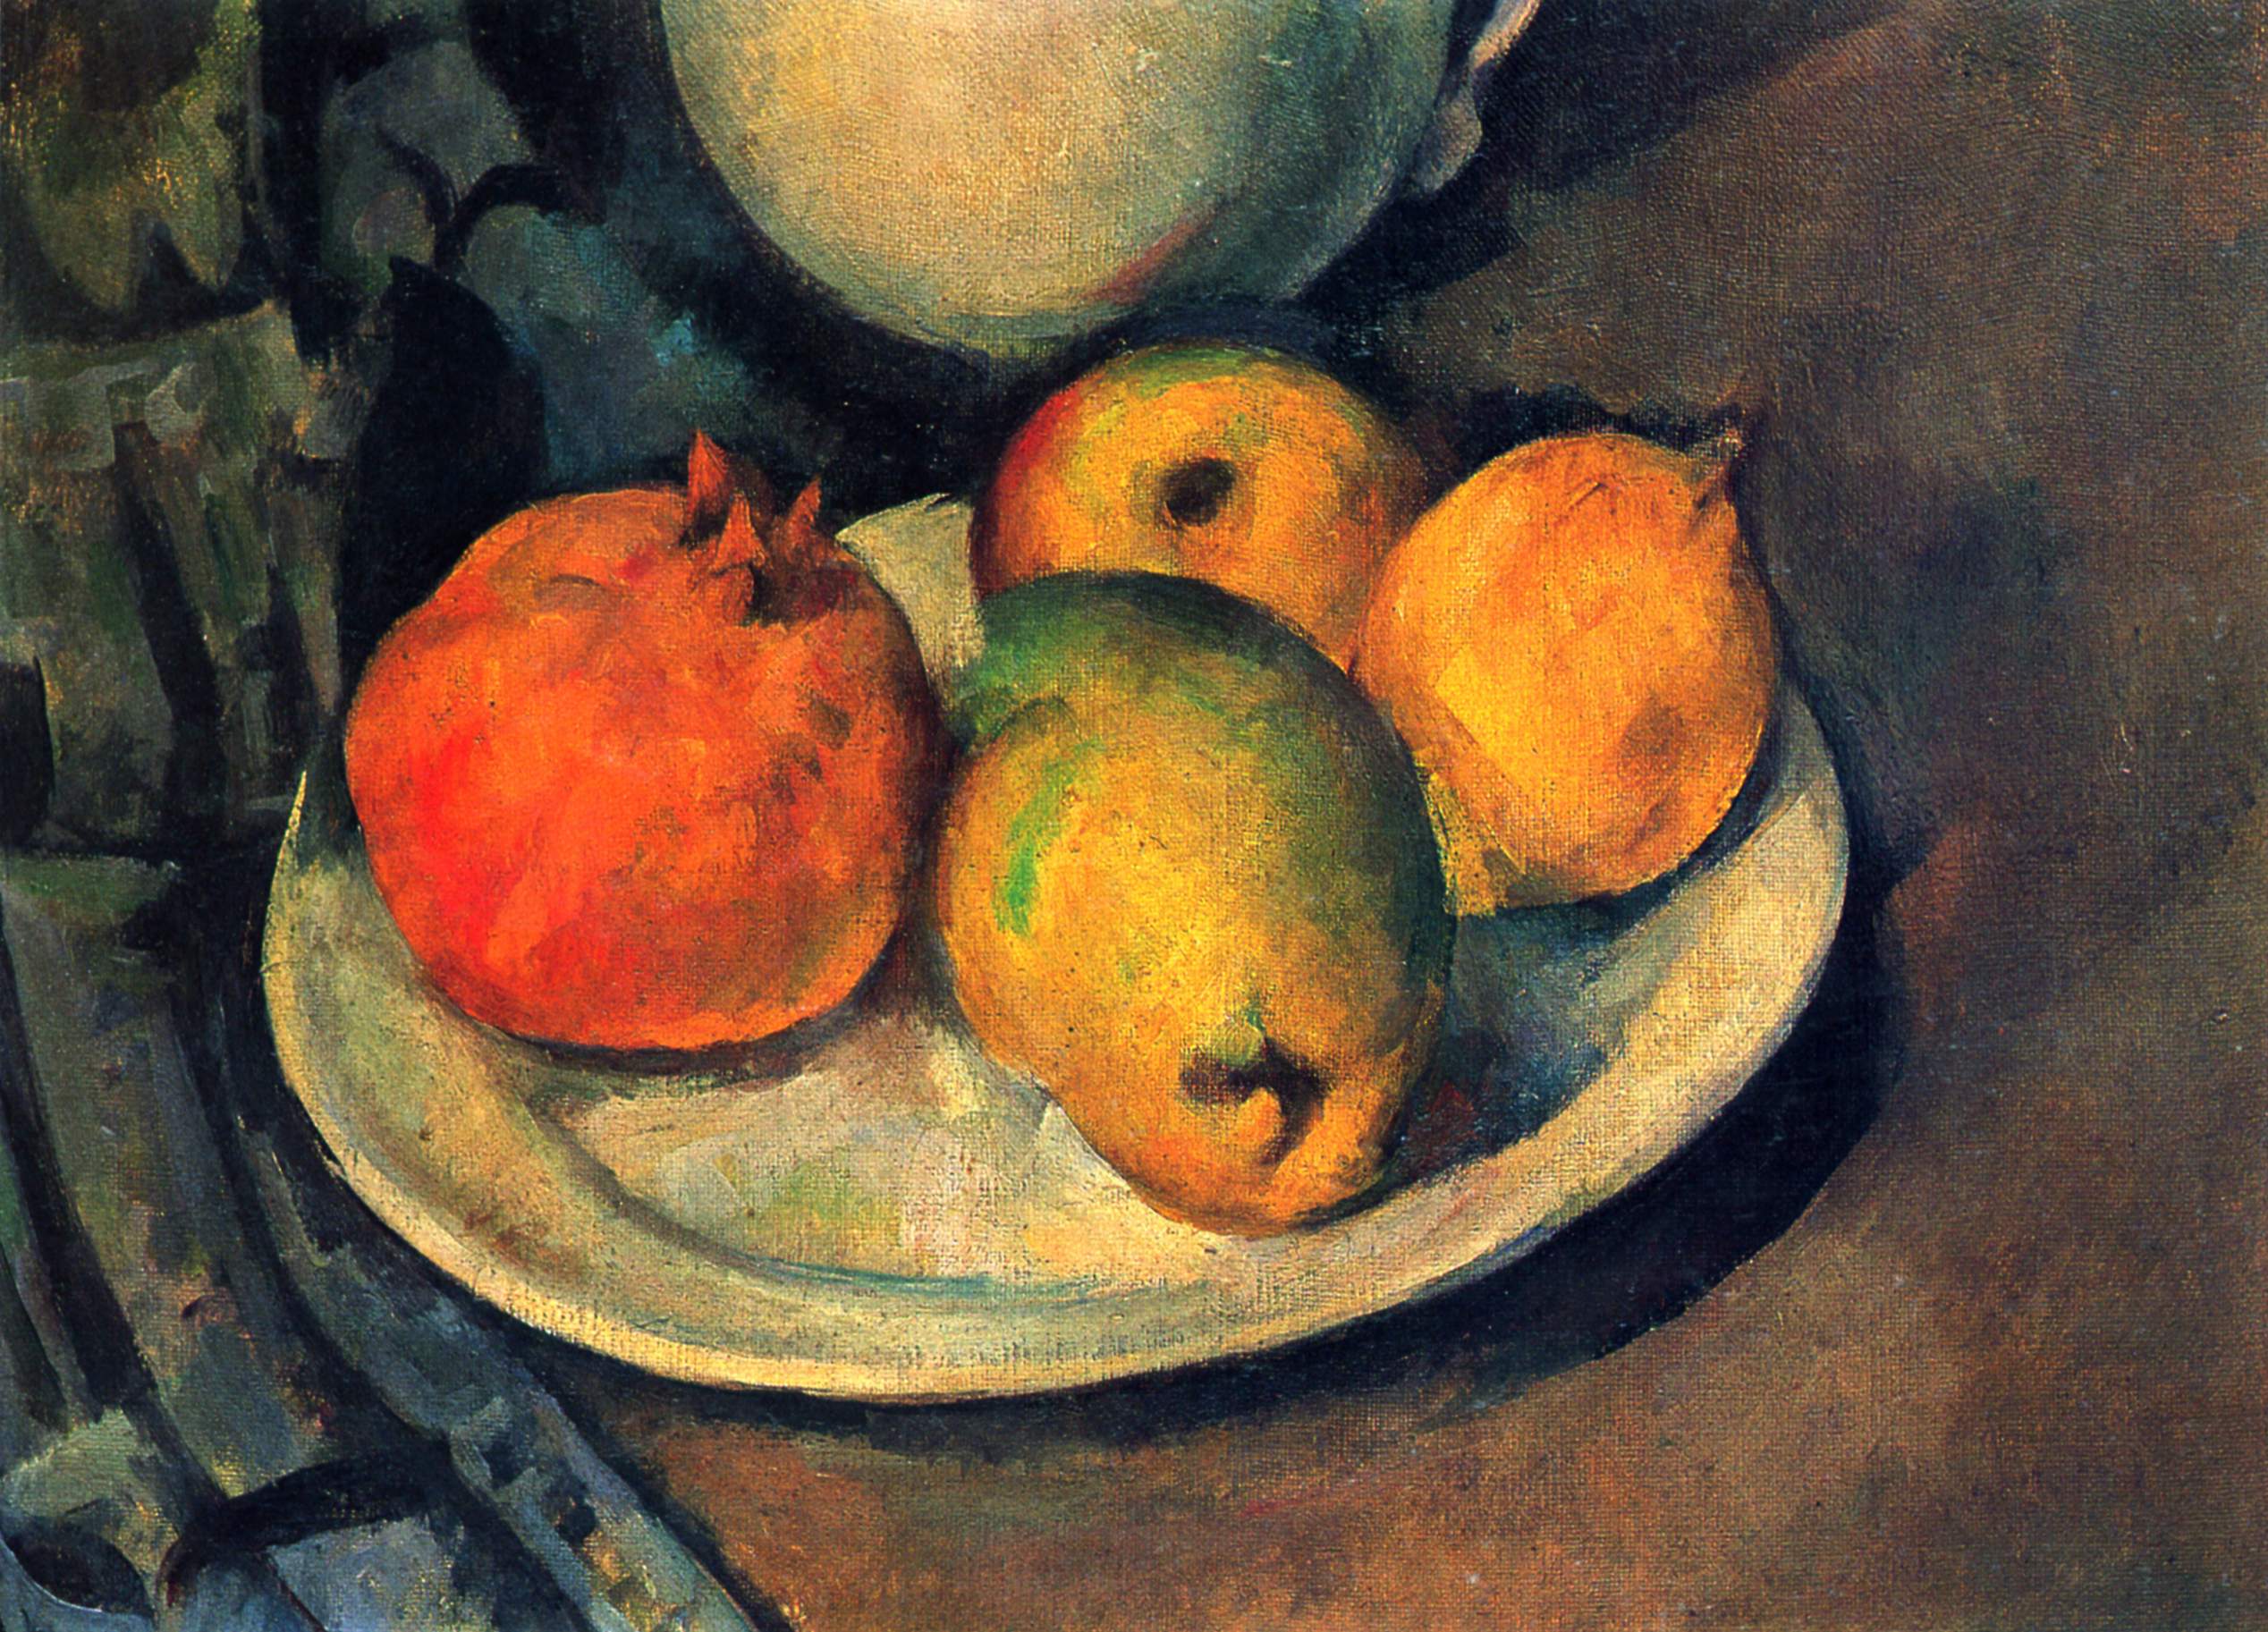 Stillleben mit Granatapfel und Birnen by Paul Cézanne - 1890 - 27 x 36 cm Private Sammlung